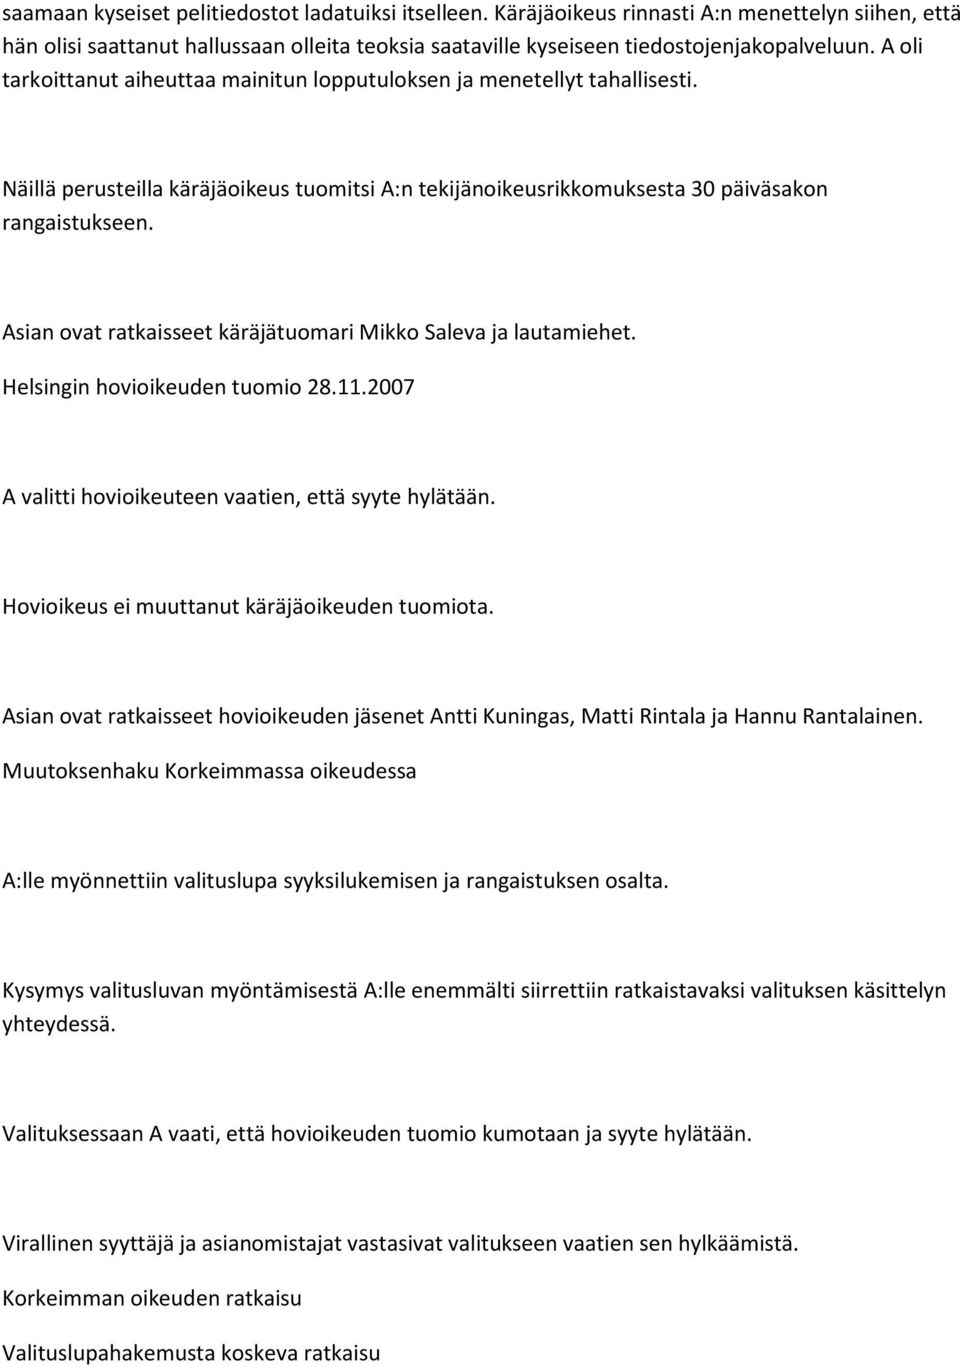 Asian ovat ratkaisseet käräjätuomari Mikko Saleva ja lautamiehet. Helsingin hovioikeuden tuomio 28.11.2007 A valitti hovioikeuteen vaatien, että syyte hylätään.